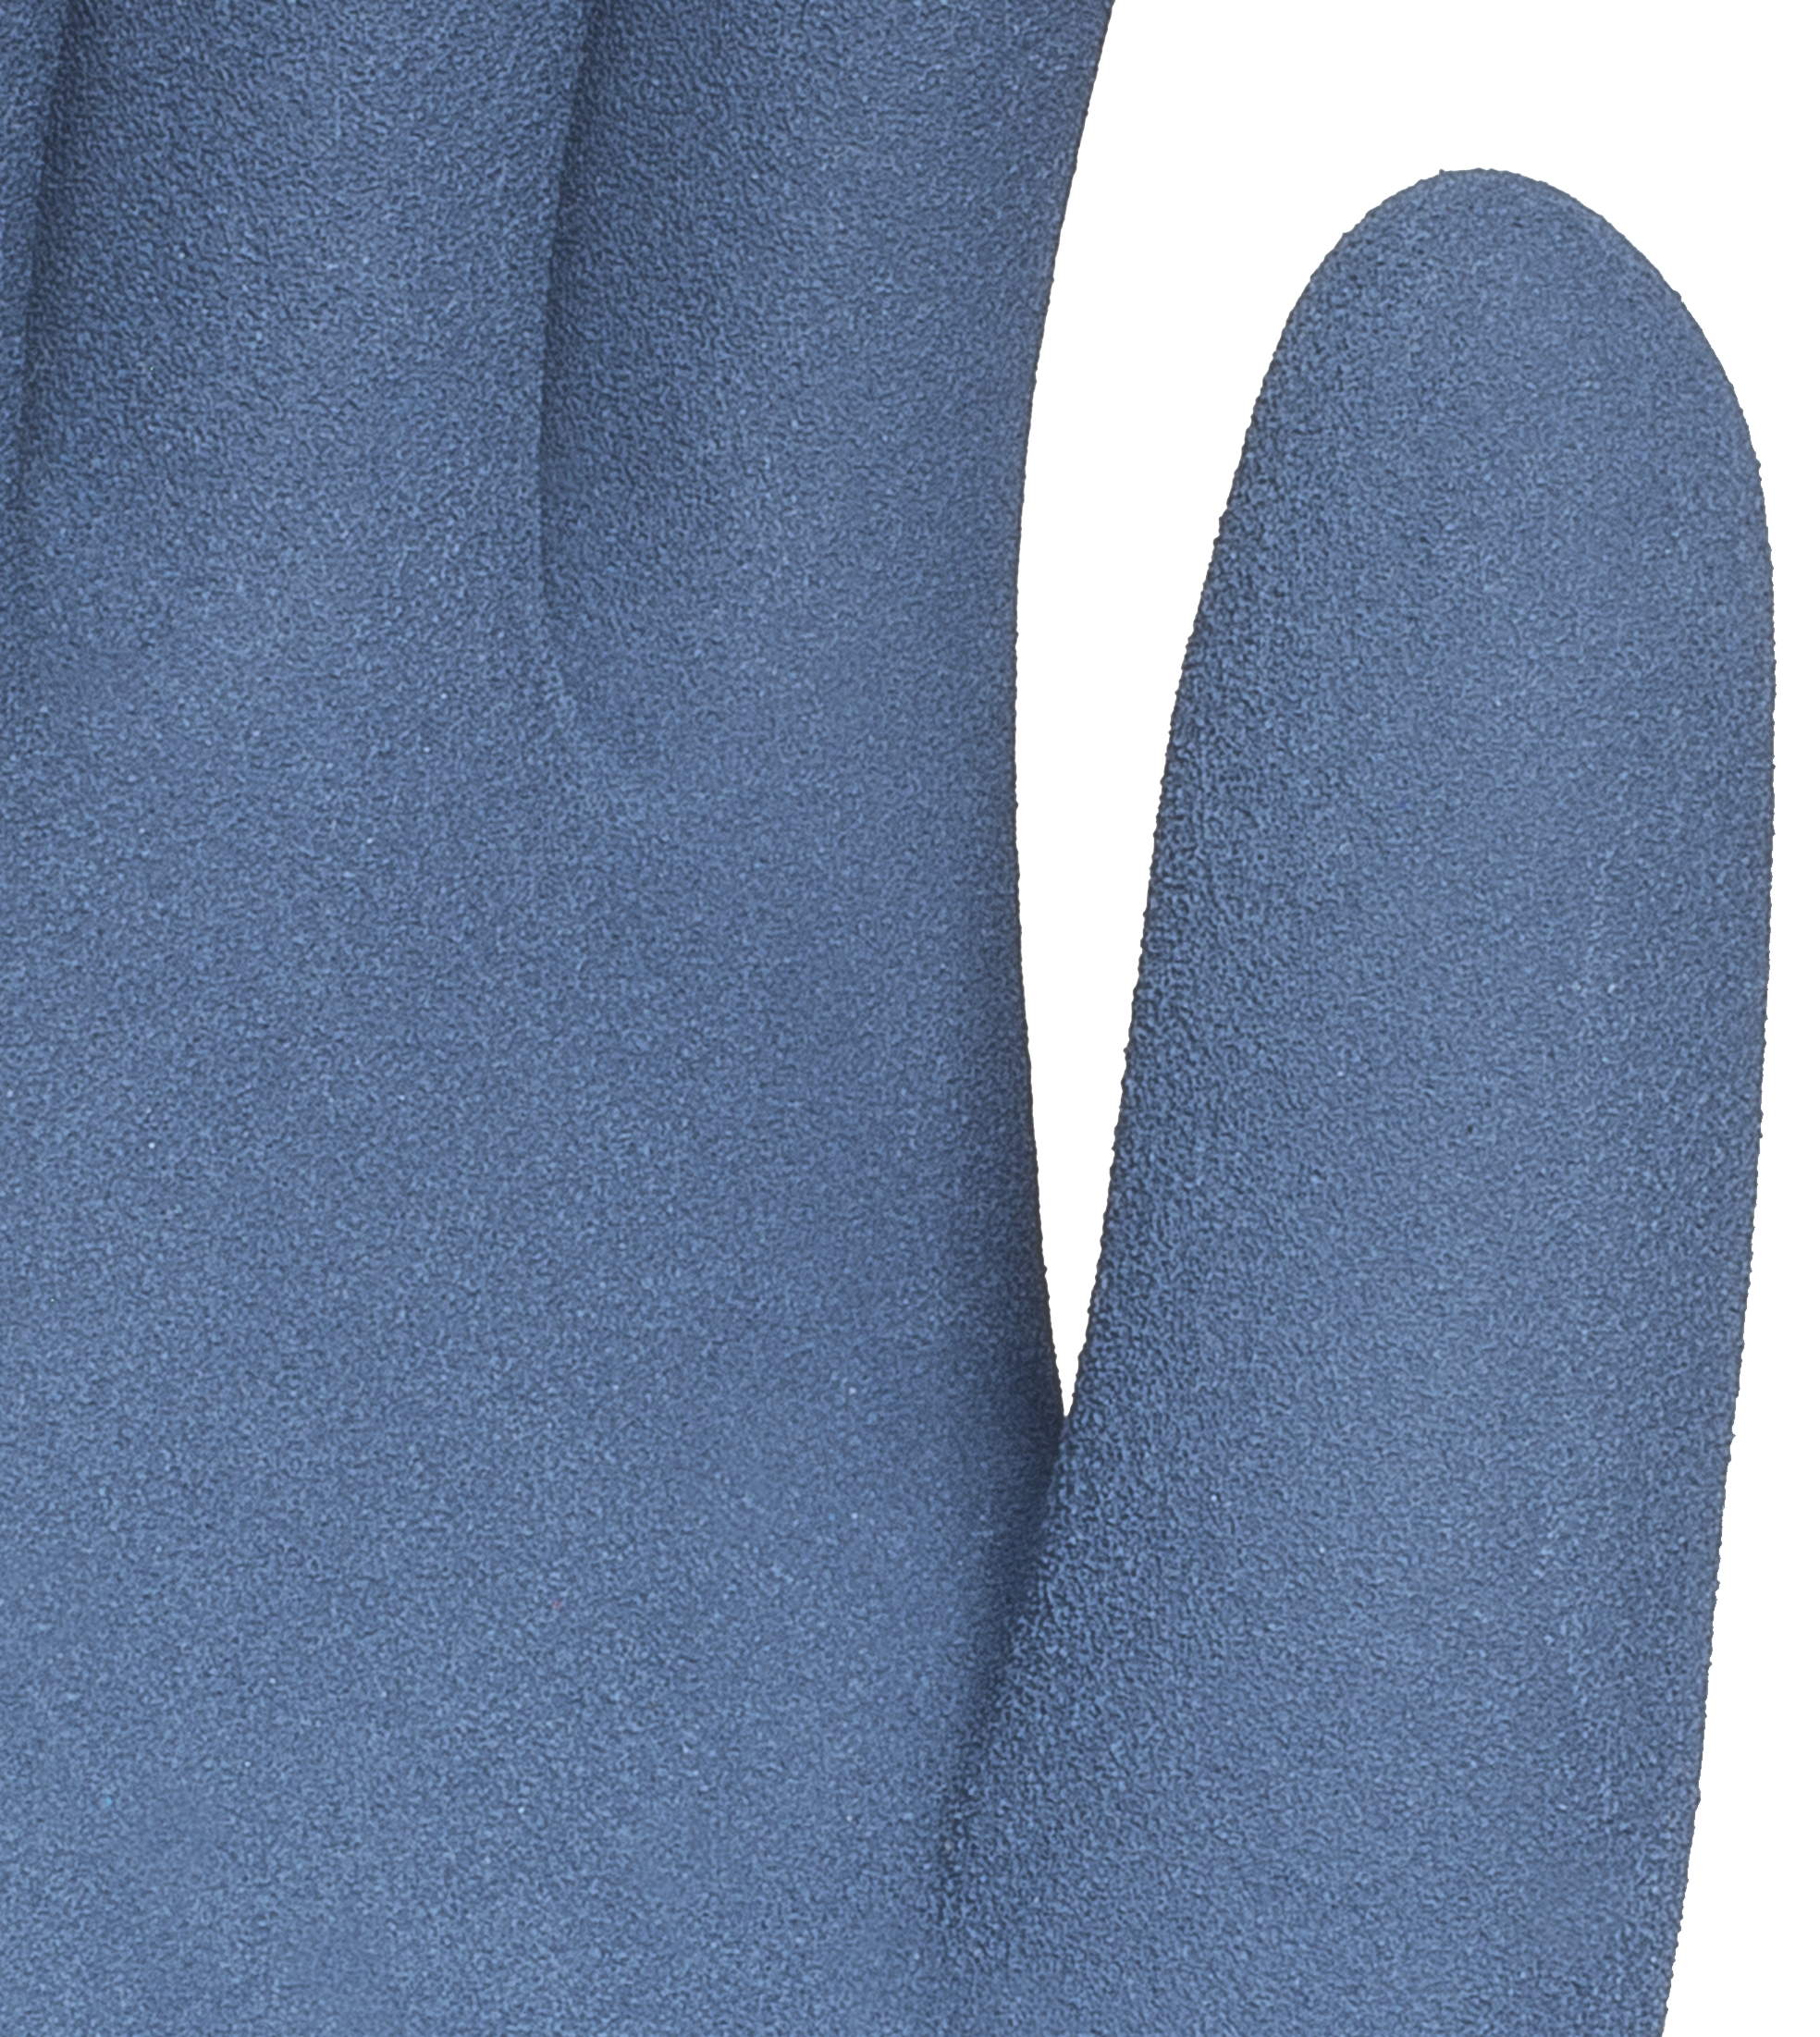 Перчатки СУХОЙ ЛЁД (р.10, 7кл., акриловые утепленные, двойное покрытие латексом) сине-оранжевый